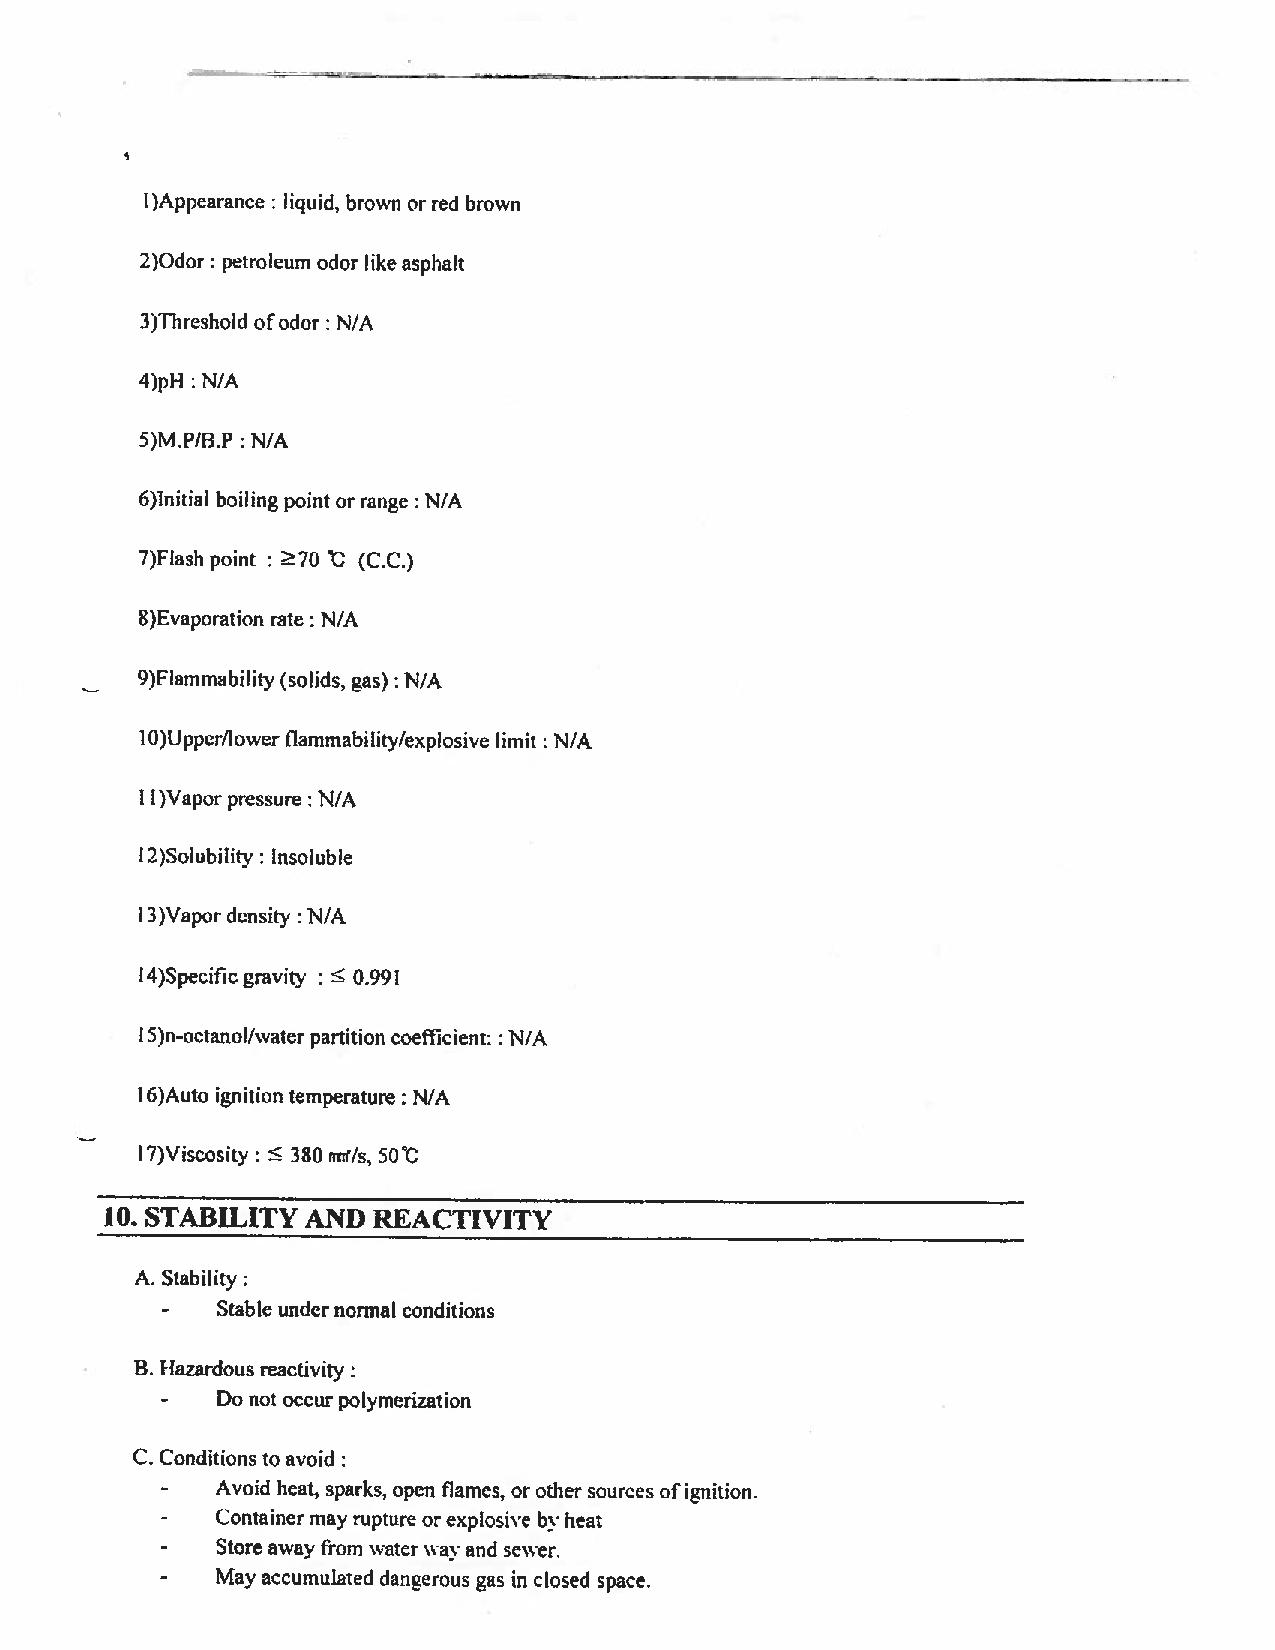 Version anglaise seulement - Page 7 numérisée de la Fiche technique sur la sécurité des substances présentes à bord le M/V Marathassa